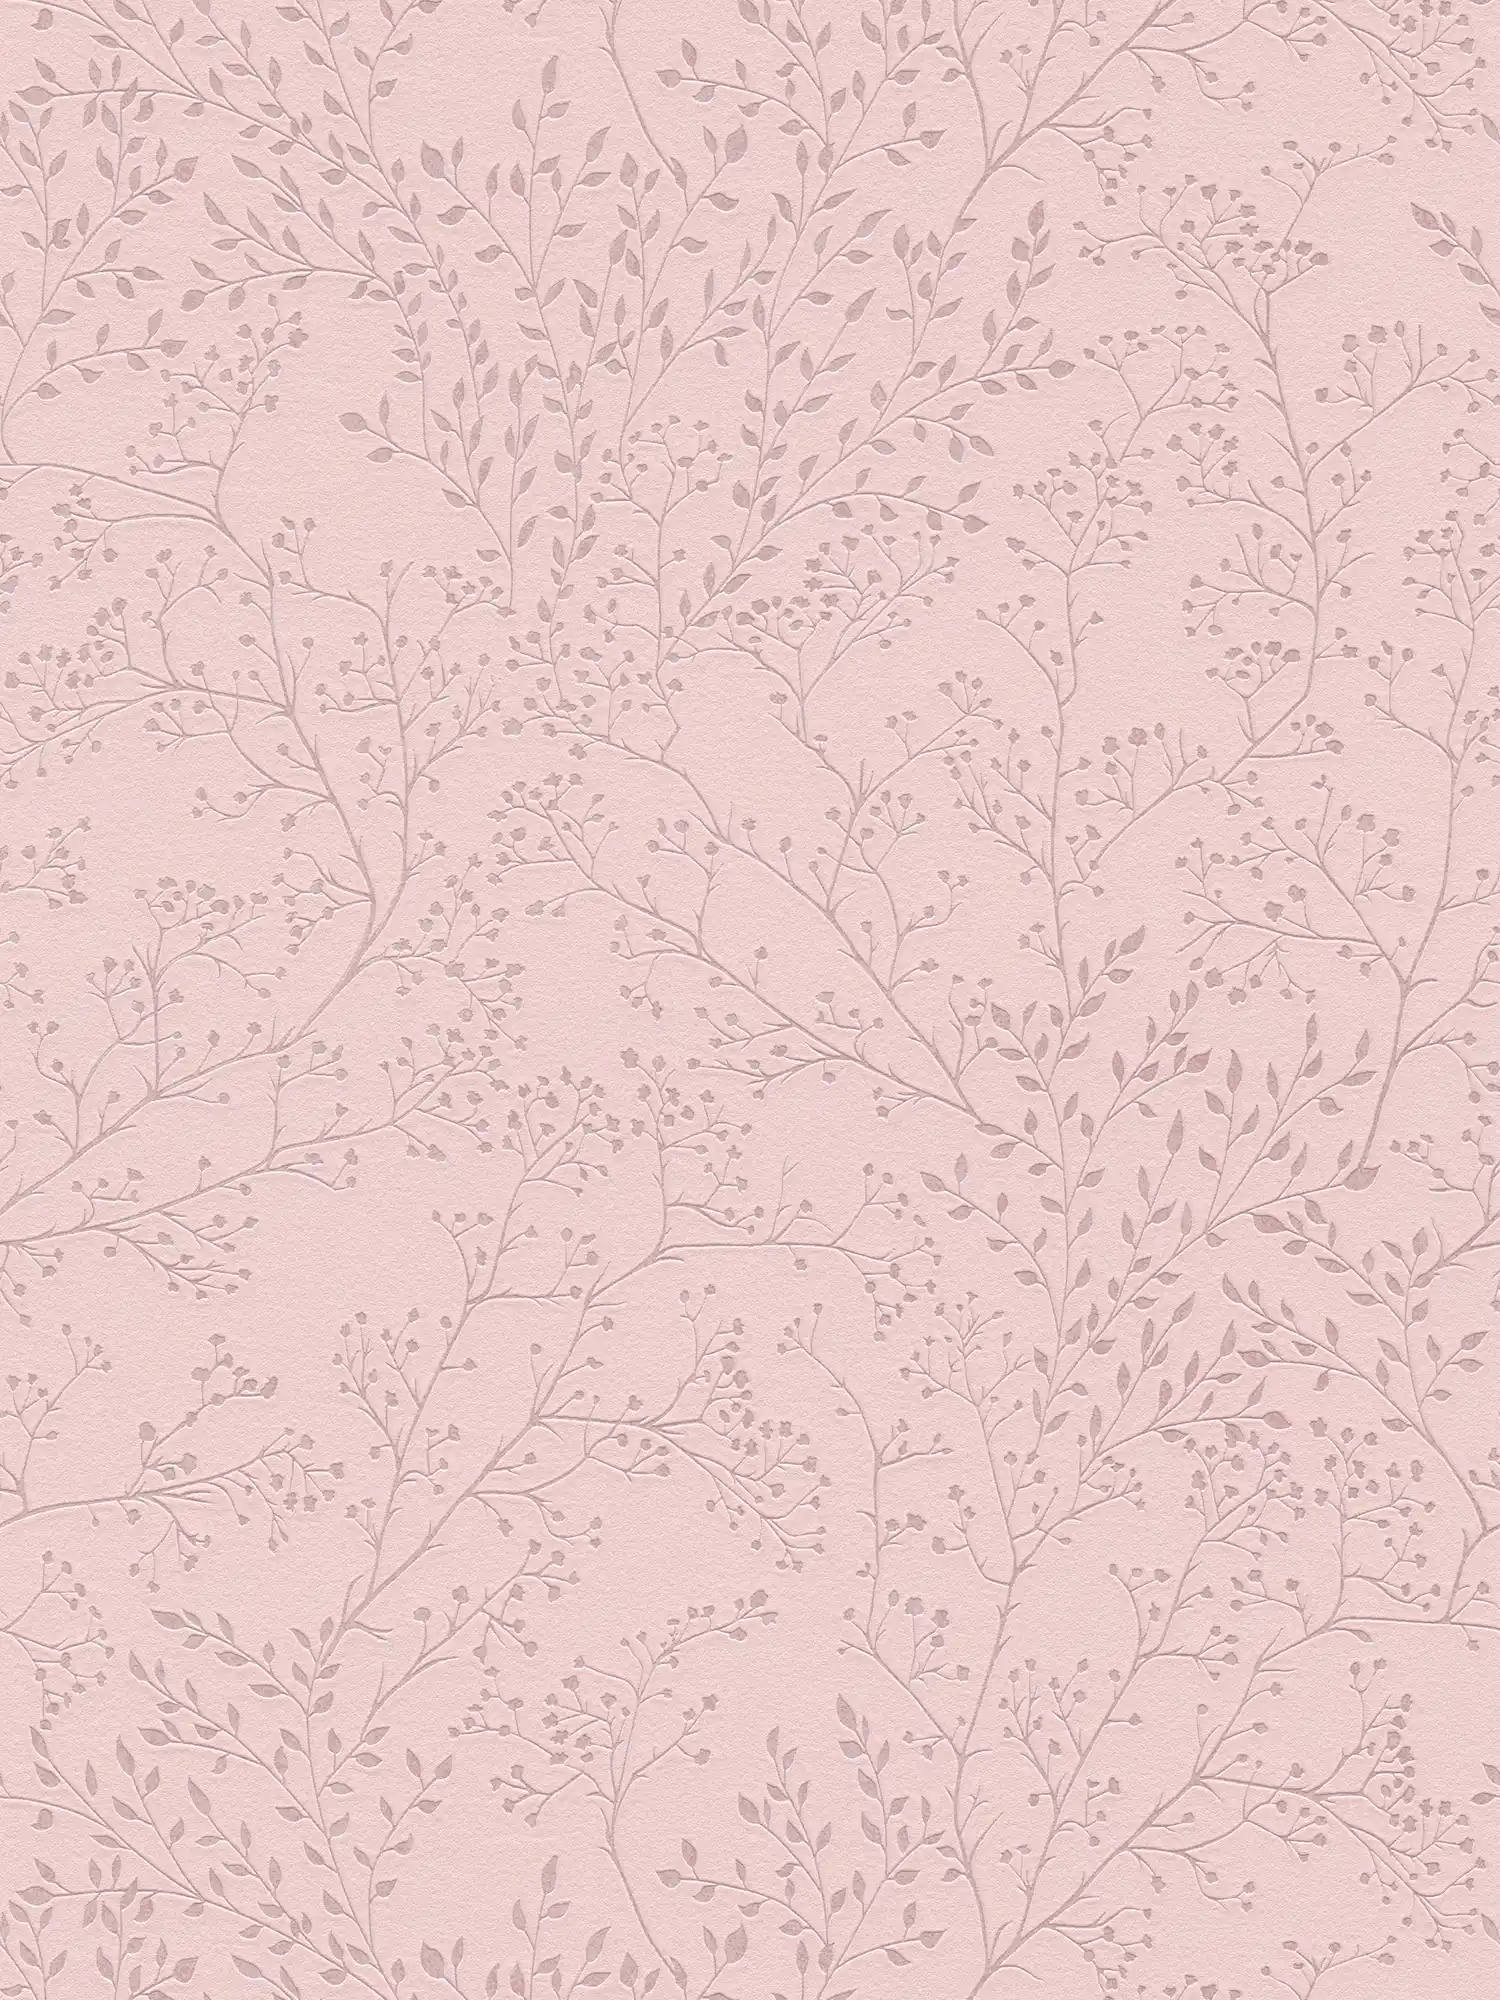 Papier peint uni rose avec motifs de feuilles, brillance & effet structuré
